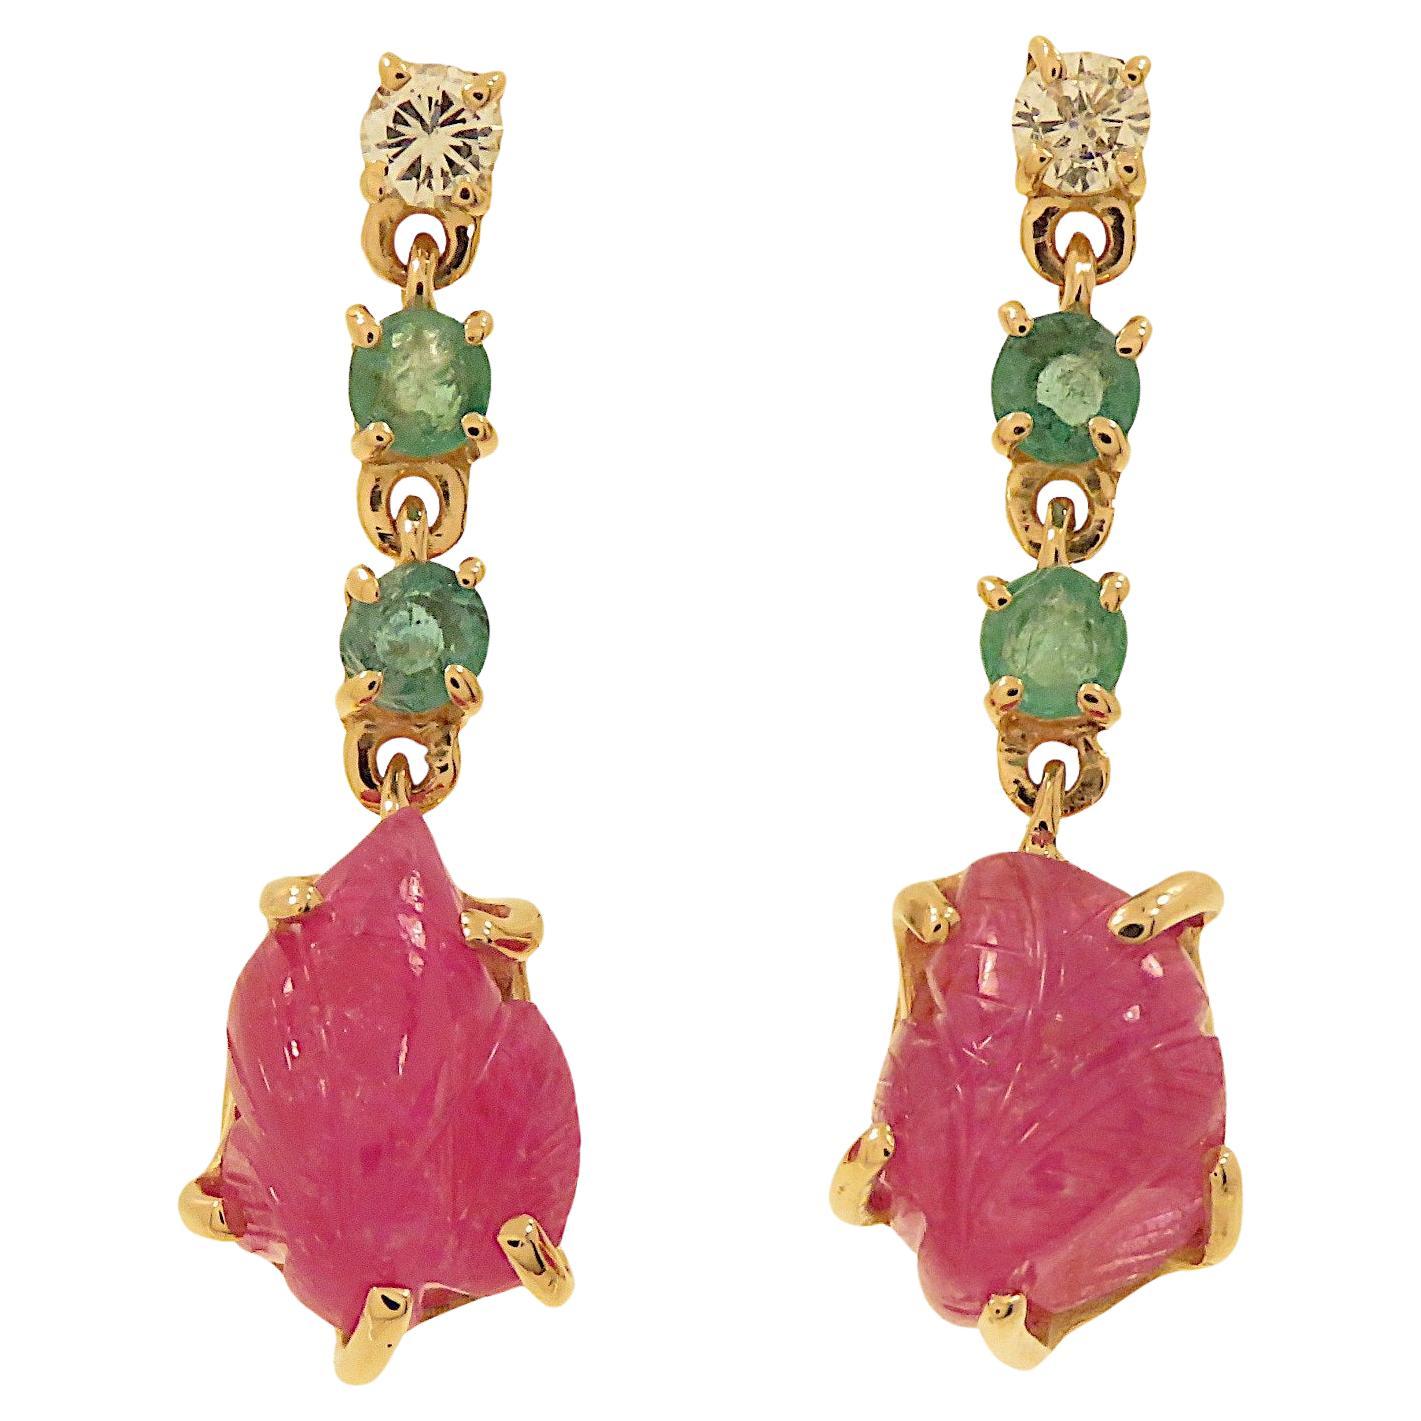 Botta gioielli orecchini con diamanti rubini e smeraldi in oro rosa For Sale